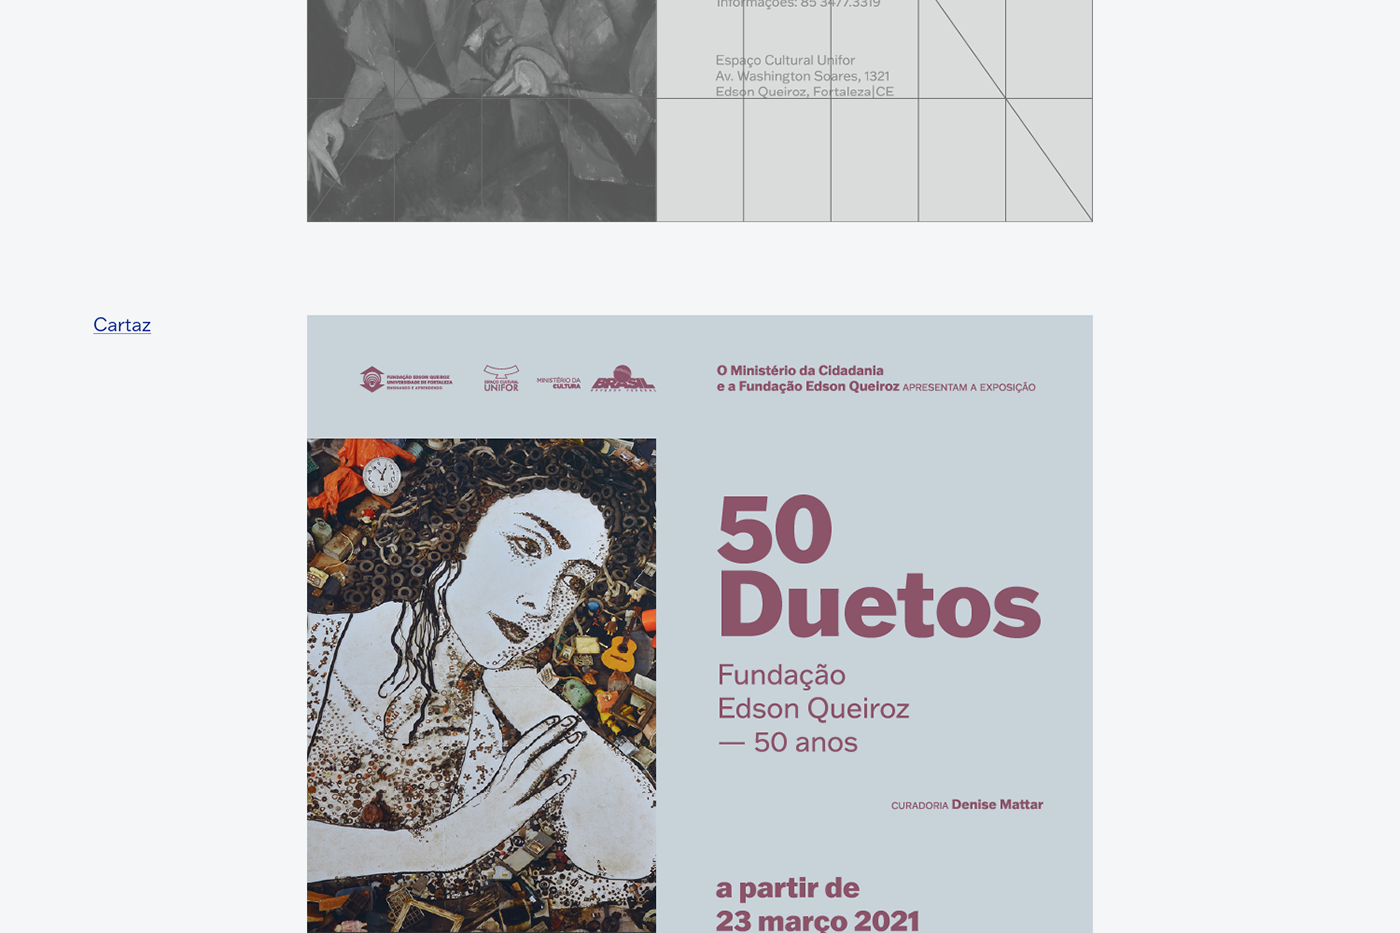 design gráfico espaçoculturalunifor Exhibition  poster